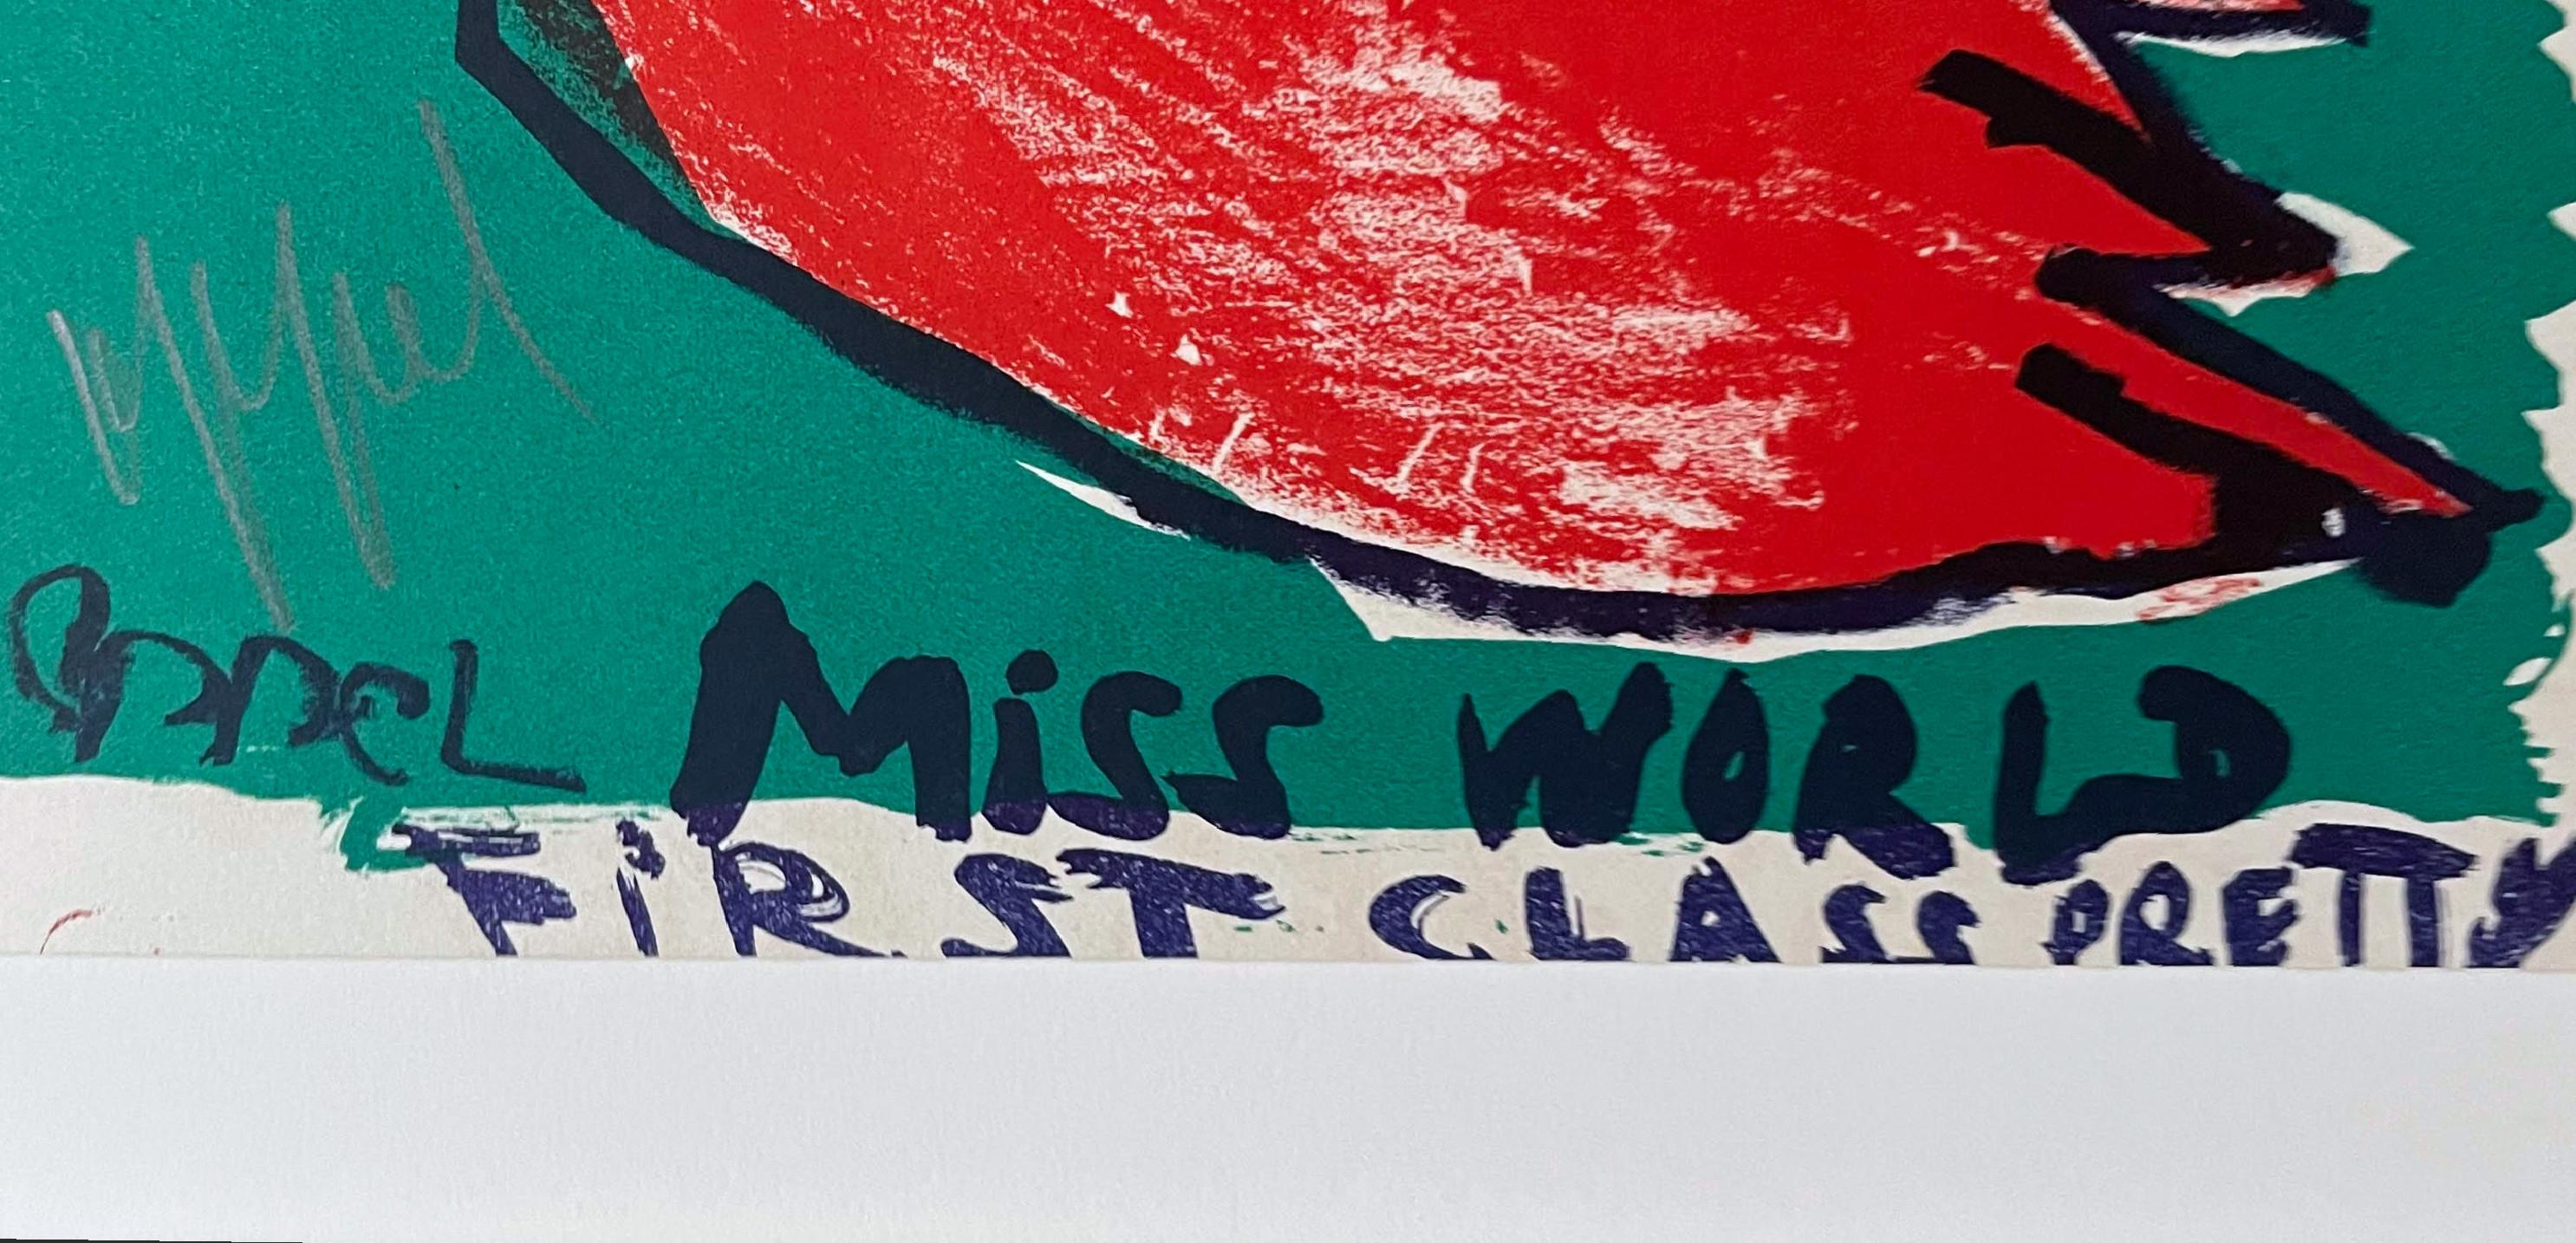 Karel Appel
Miss World First Class Pretty (édition de luxe signée à la main du portfolio 1 Cent Life, provenant de la succession de l'artiste Robert Indiana), 1964
Lithographie en deux feuilles sur papier vélin (signée à la main par Karel